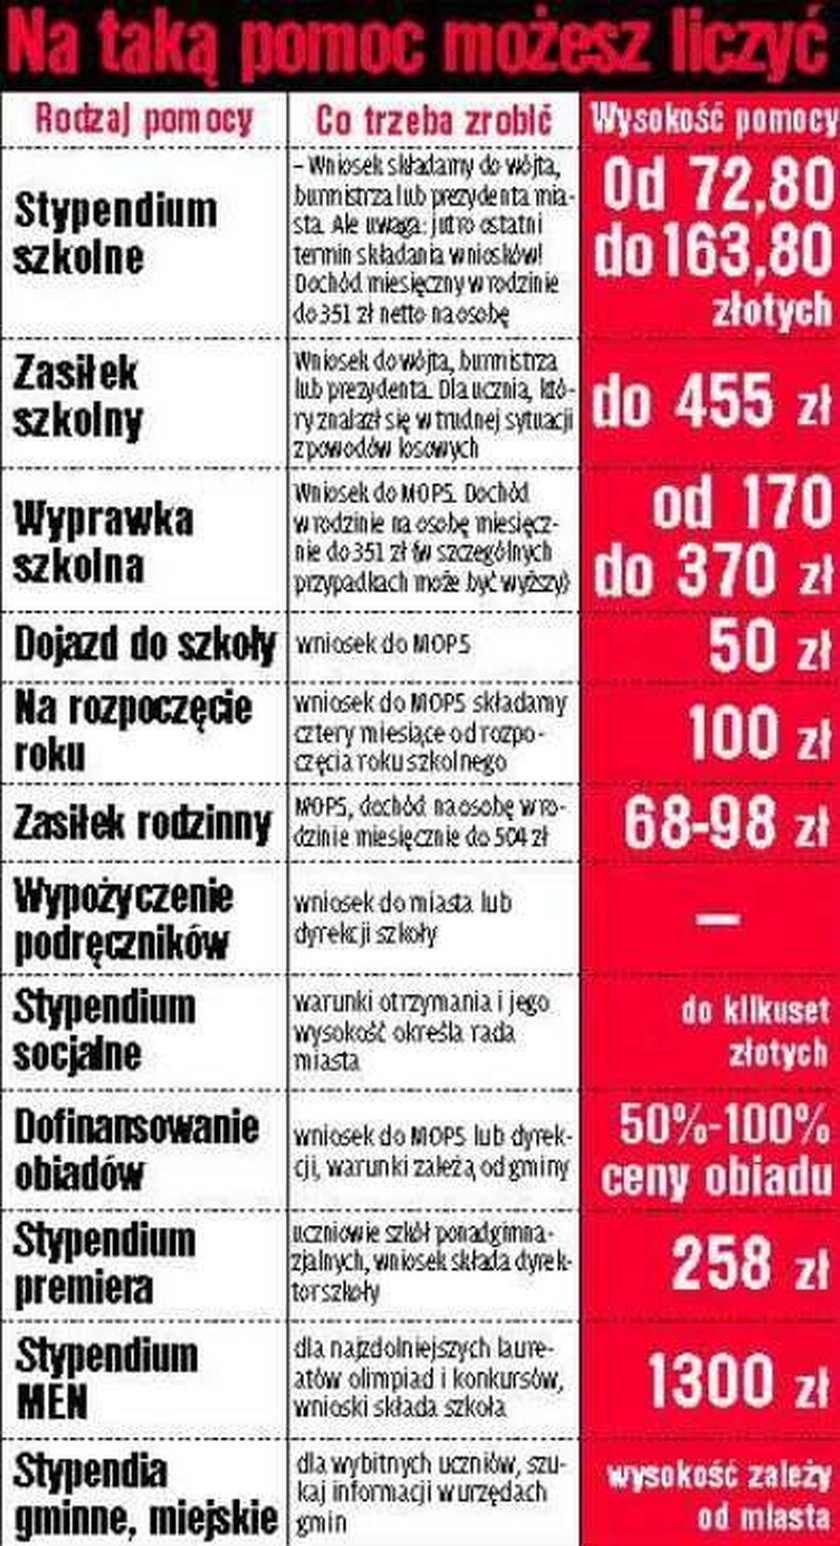 Szkoły w Polsce są za drogie